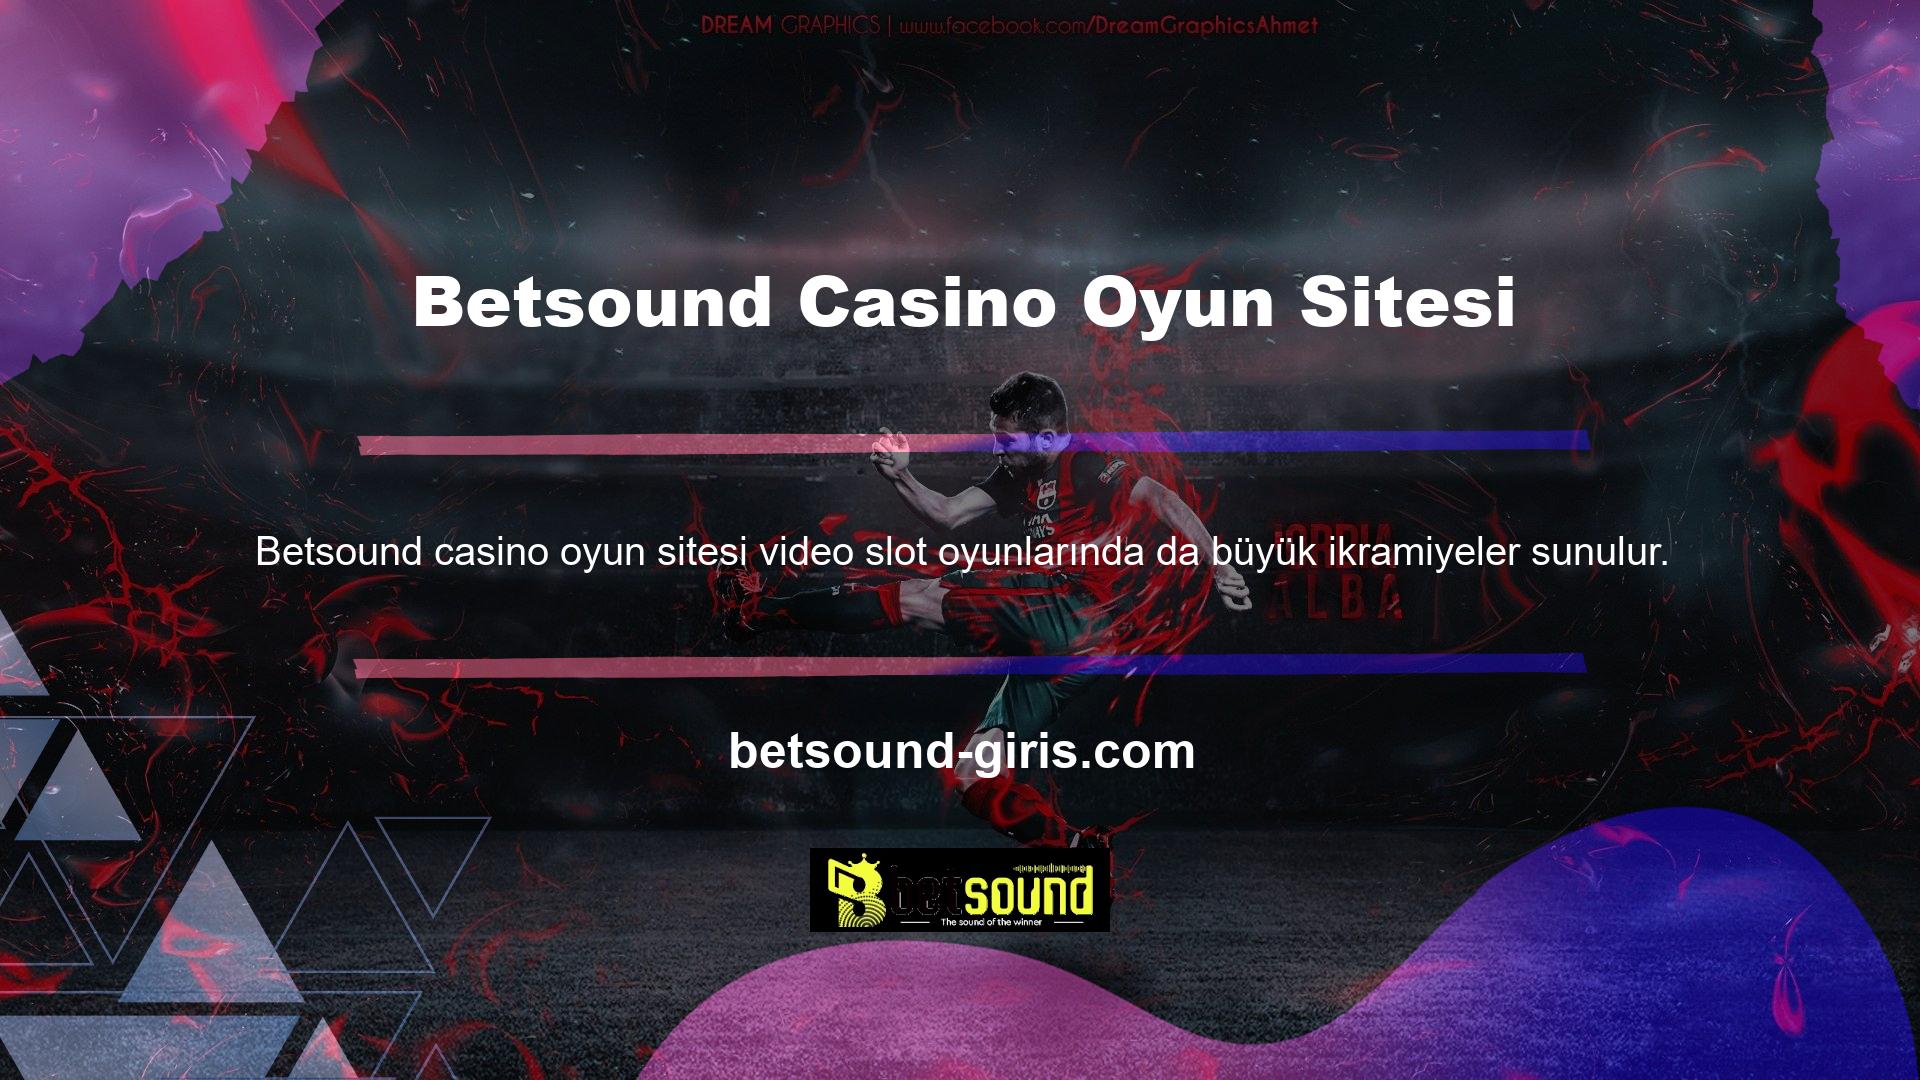 Betsound casino oyun sitesi ülkemizde tüm Casino hizmetlerini tek lisans altında sunarak faaliyetlerine başlamıştır